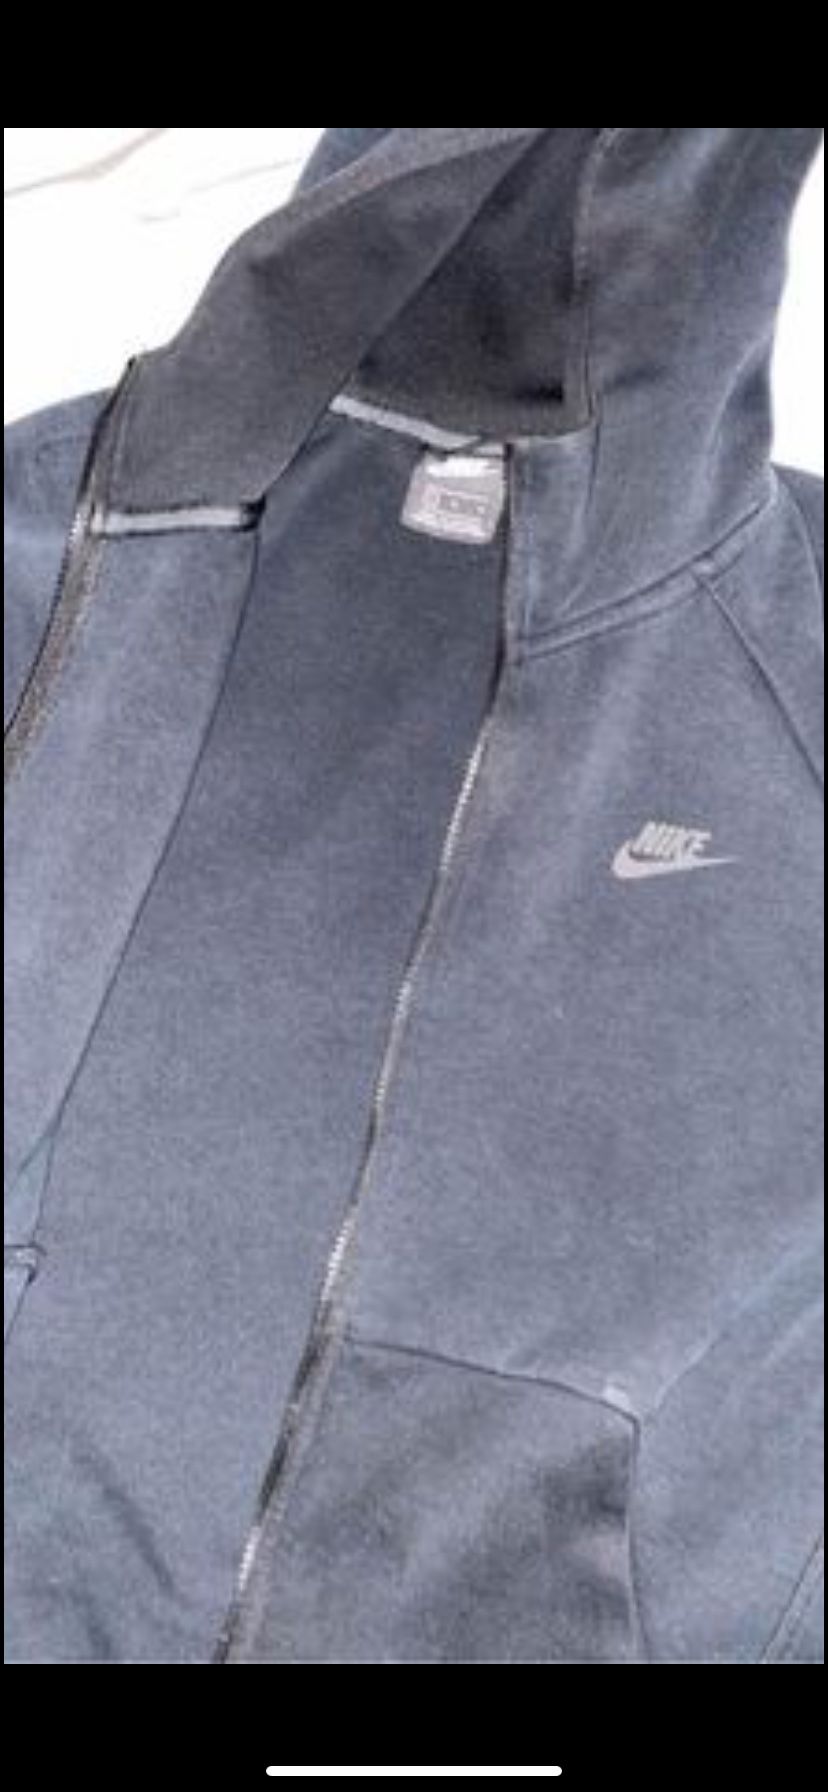 Nike Fleece Jacket